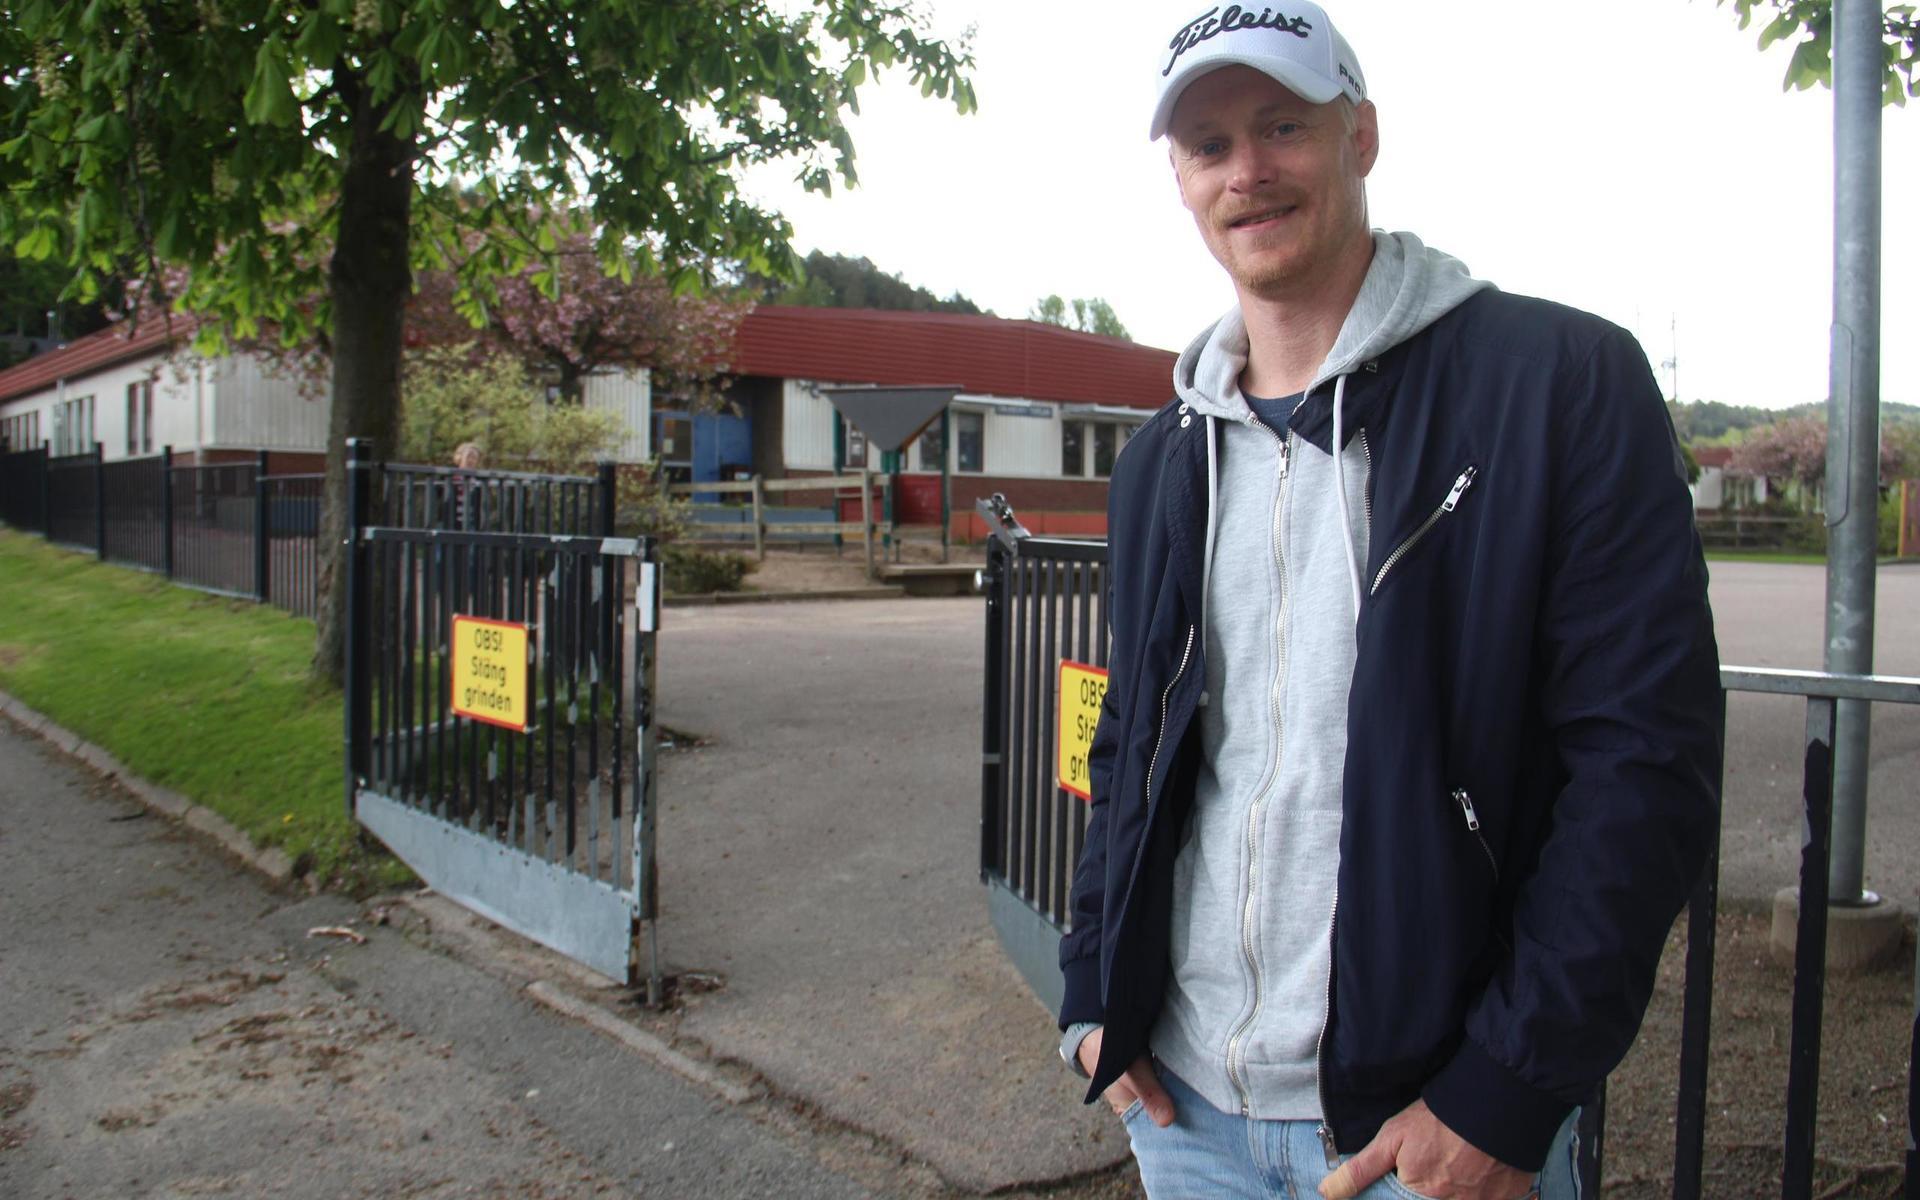 Robert Carlsson bor i Rävekärr och har en dotter som går på Rävekärrsskolan. Han säger att lokalerna känns slitna och gamla. 